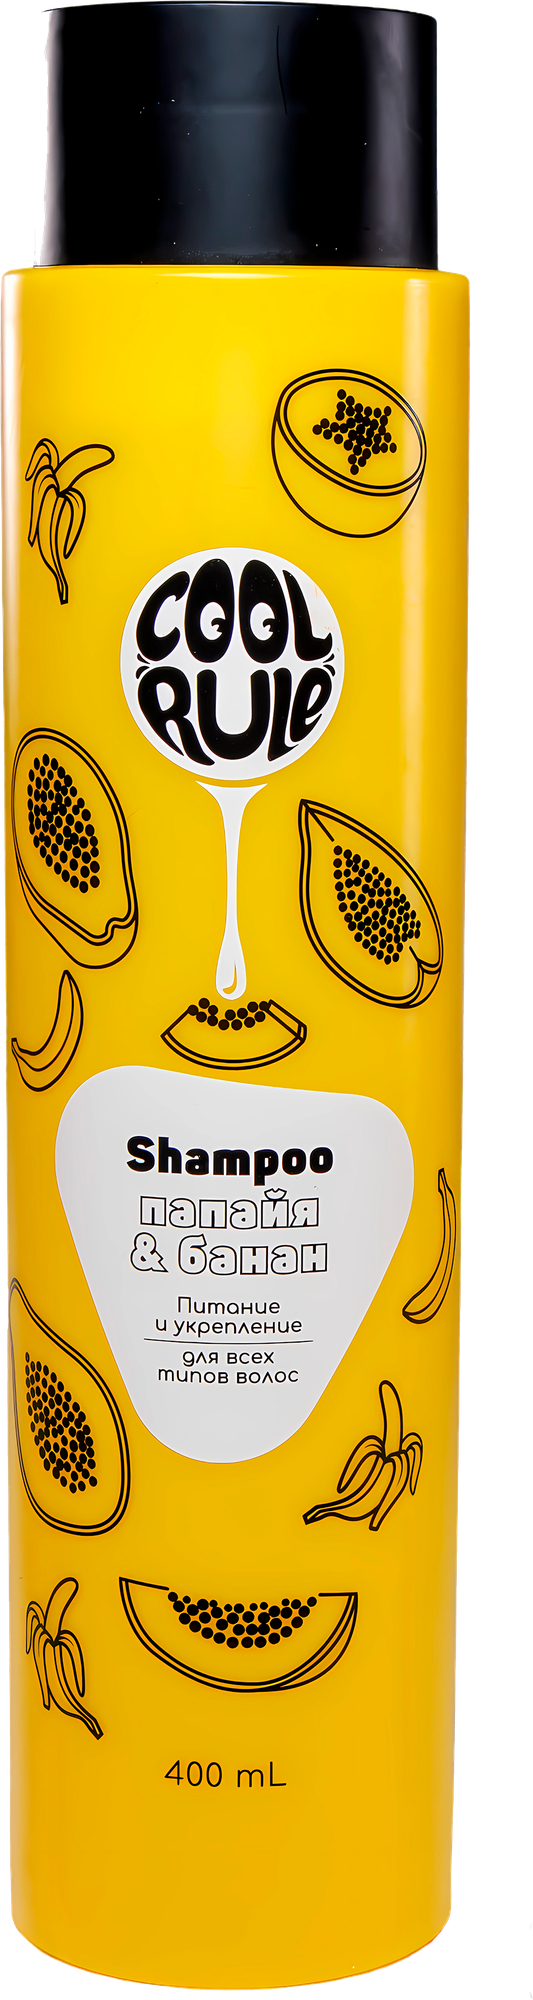 Cool Rule Шампунь Питание&Укрепление для всех типов волос Папайя&Банан 400 мл 1 шт